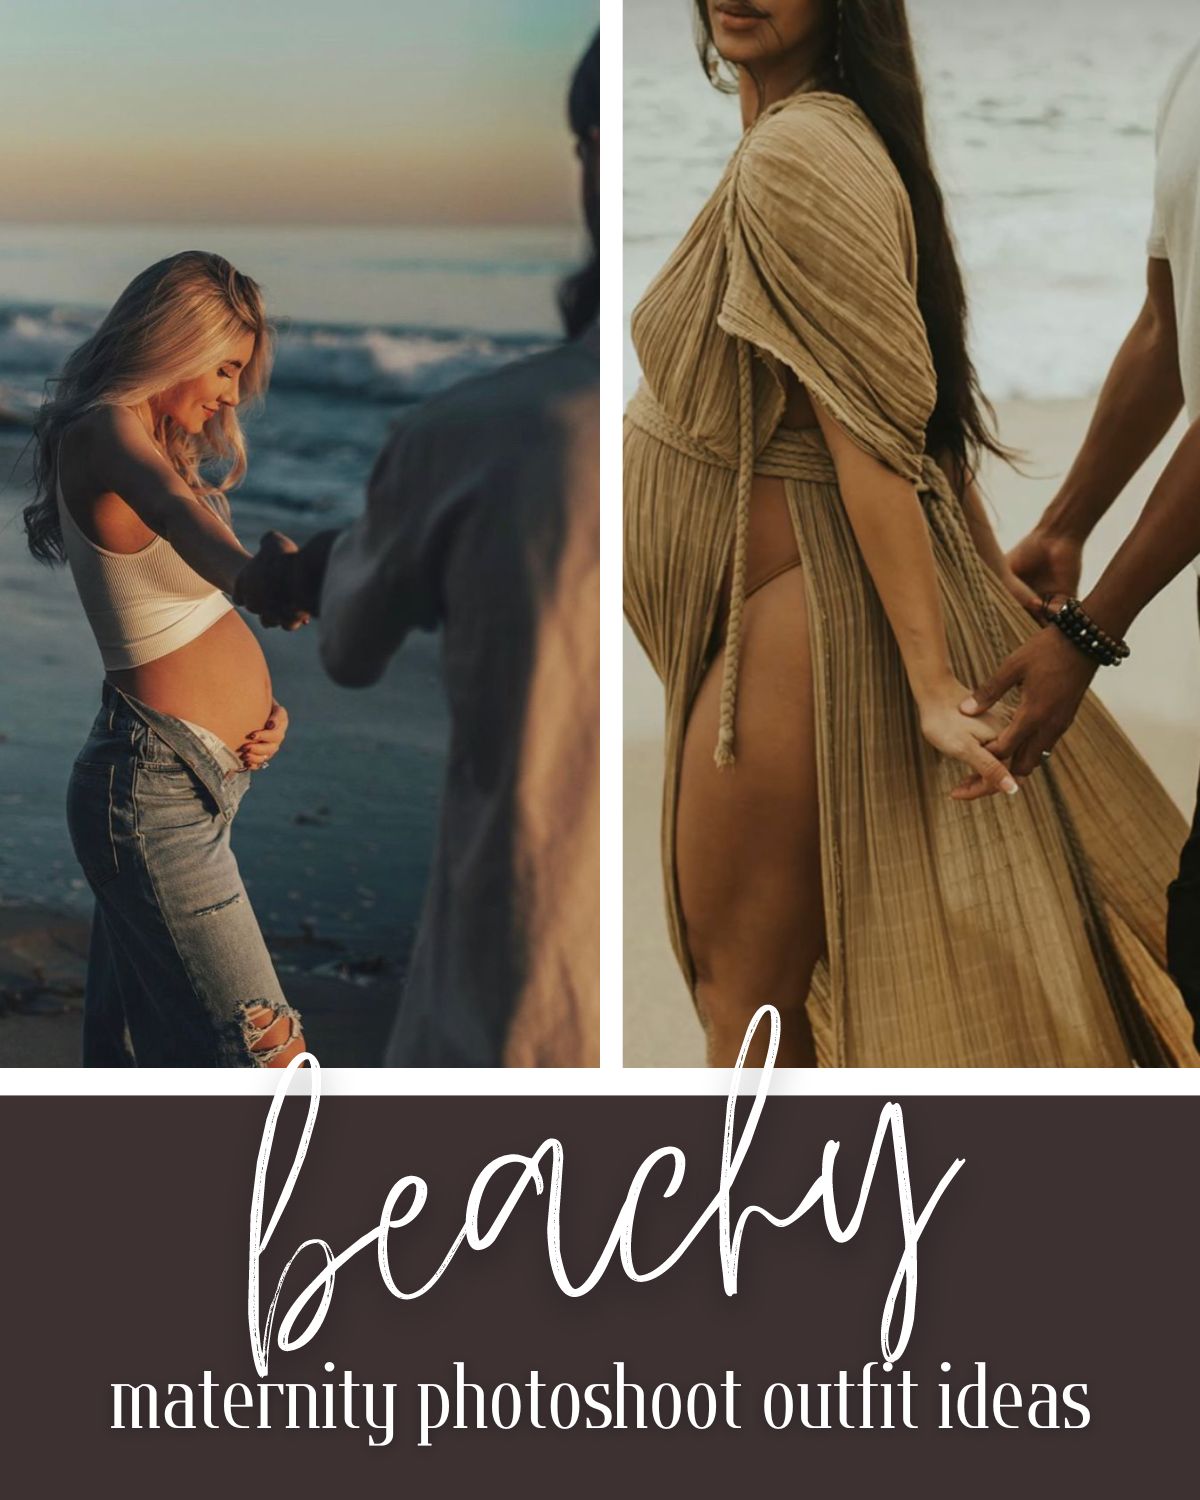 Beach outfit ideas for maternity photos